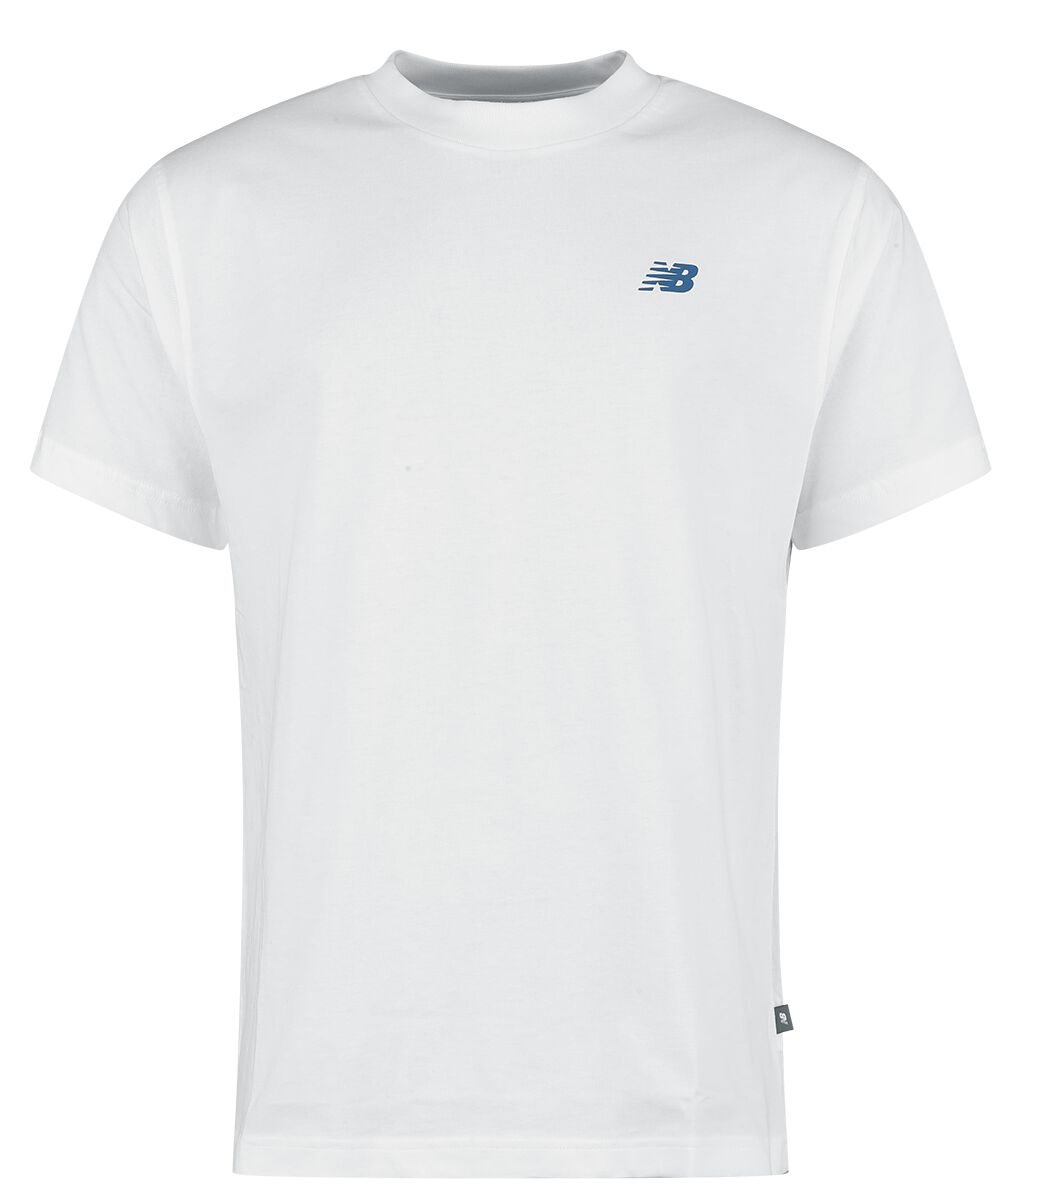 New Balance T-Shirt - Runners Tee - S bis XXL - für Männer - Größe L - weiß